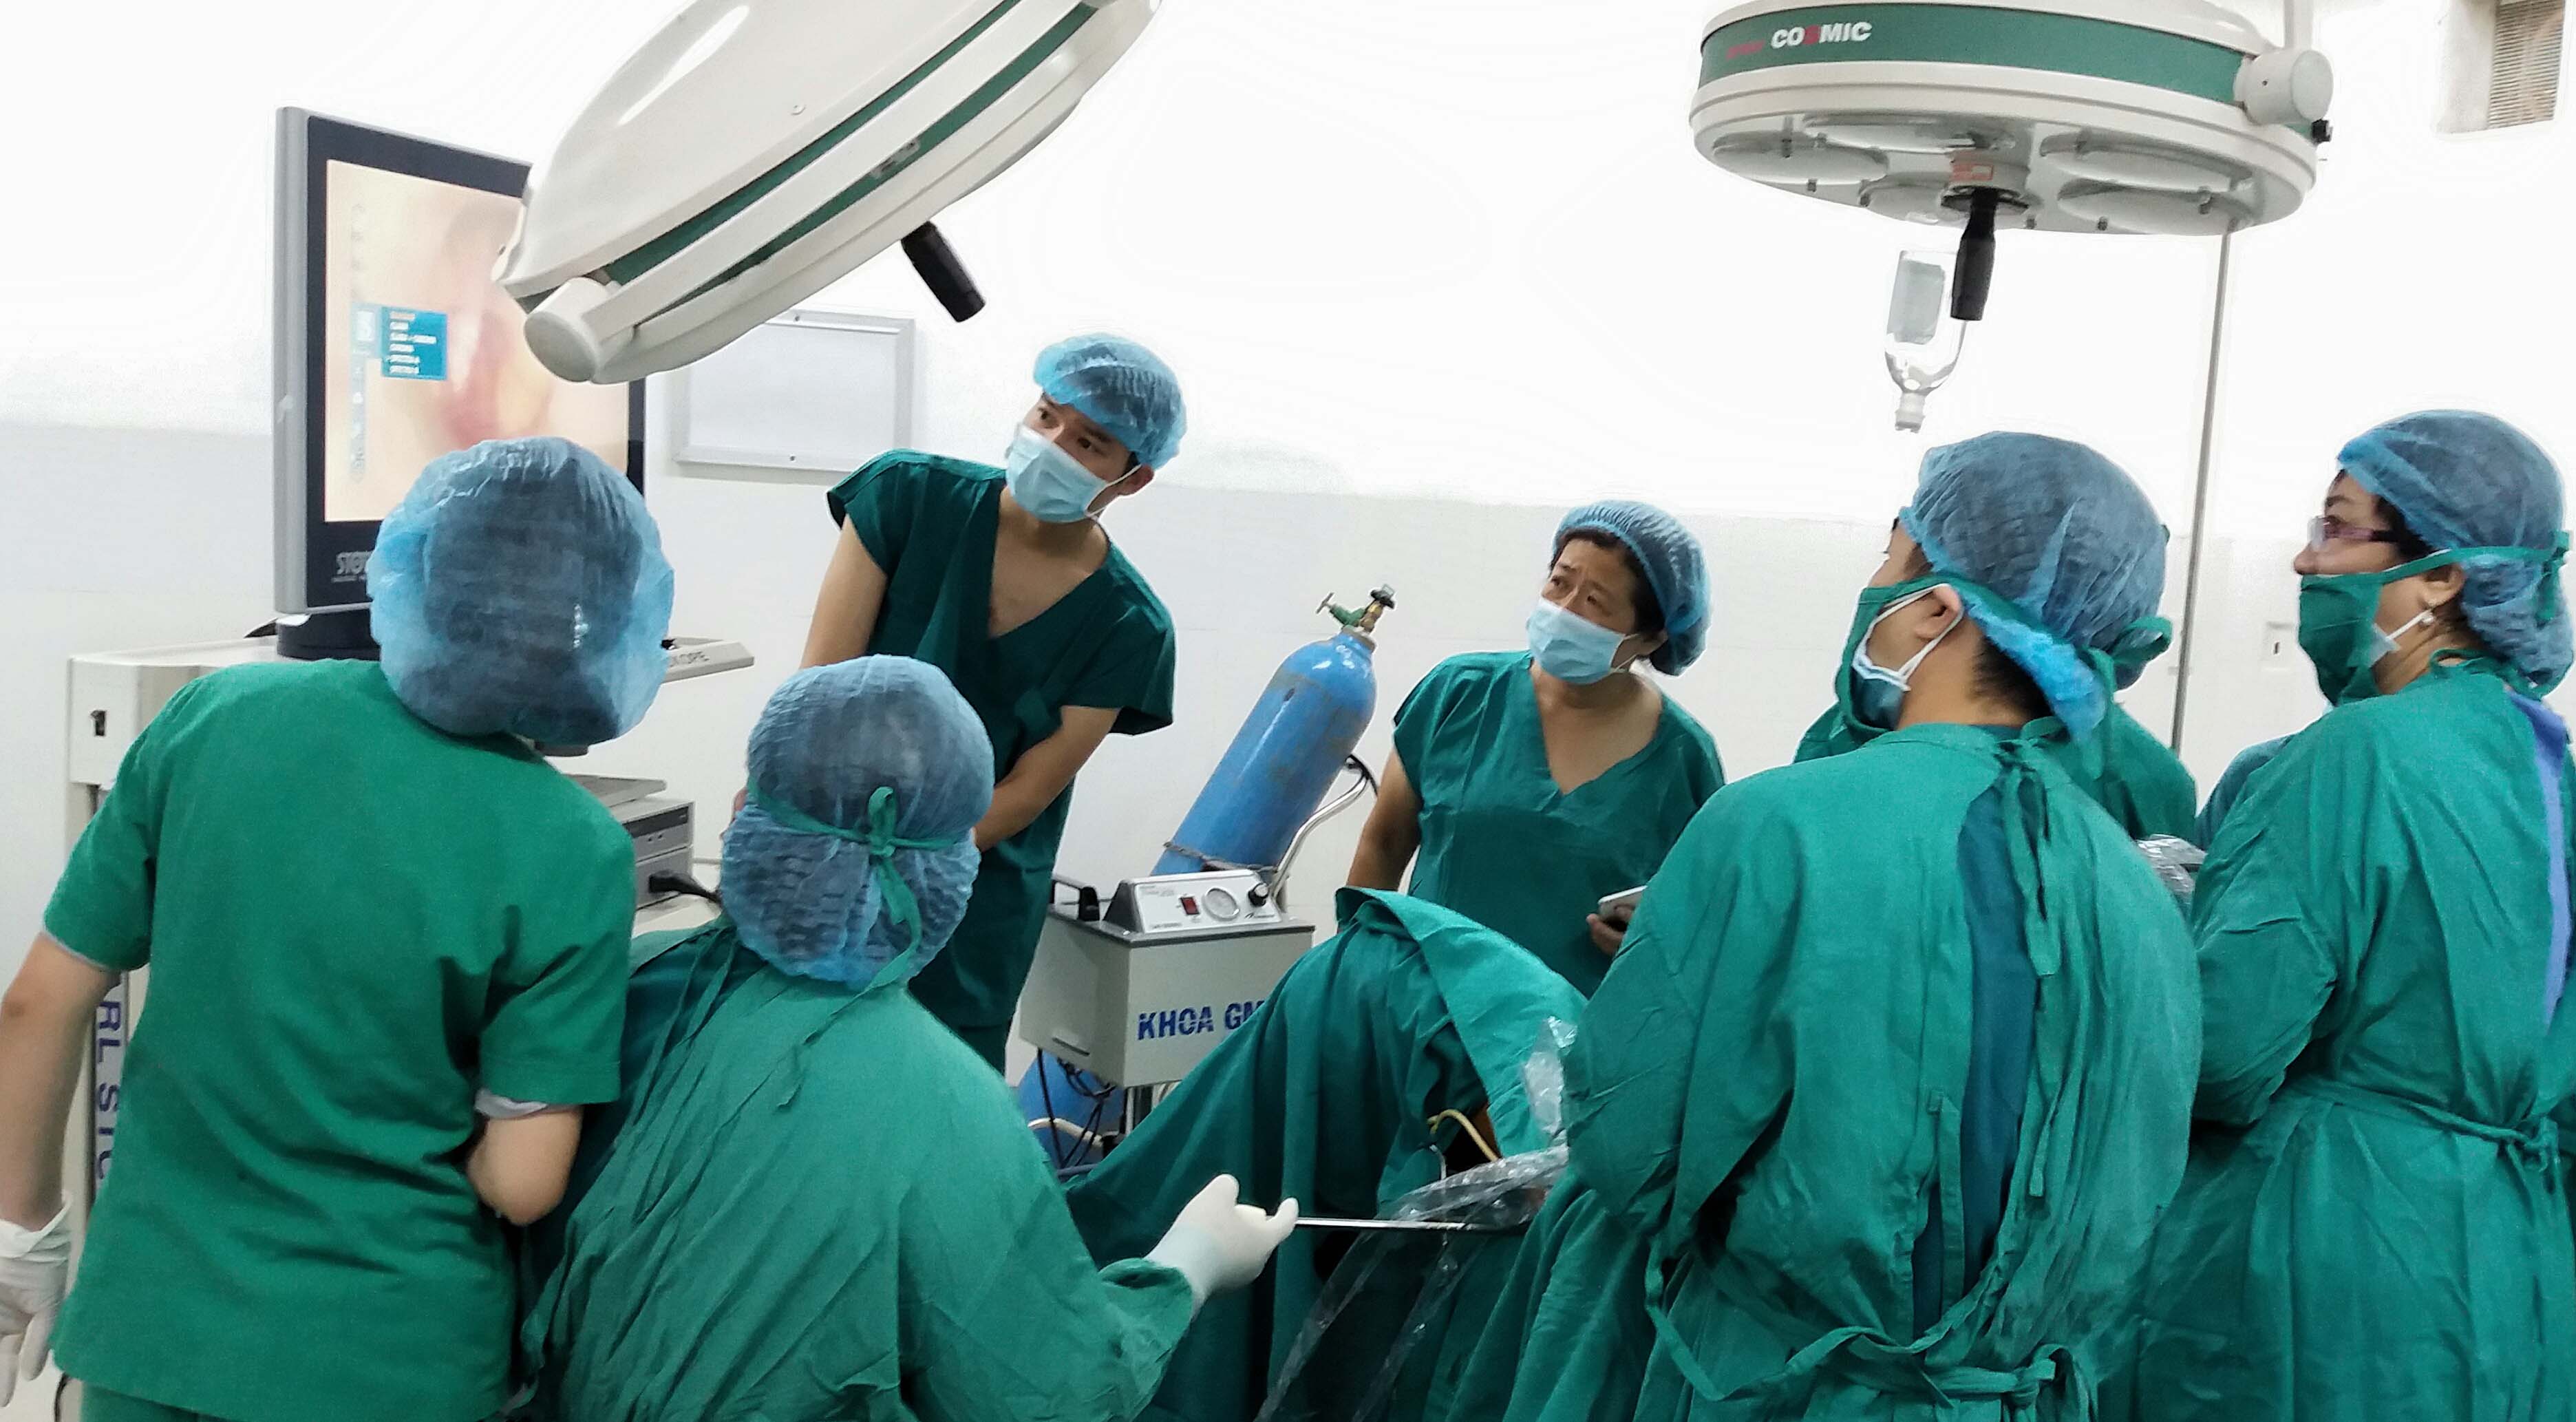 Chuyển giao kỹ thuật phẫu thuật nội soi cắt tử cung tại Bệnh viện Đa khoa Gia Lai. Ảnh: Như Nguyện